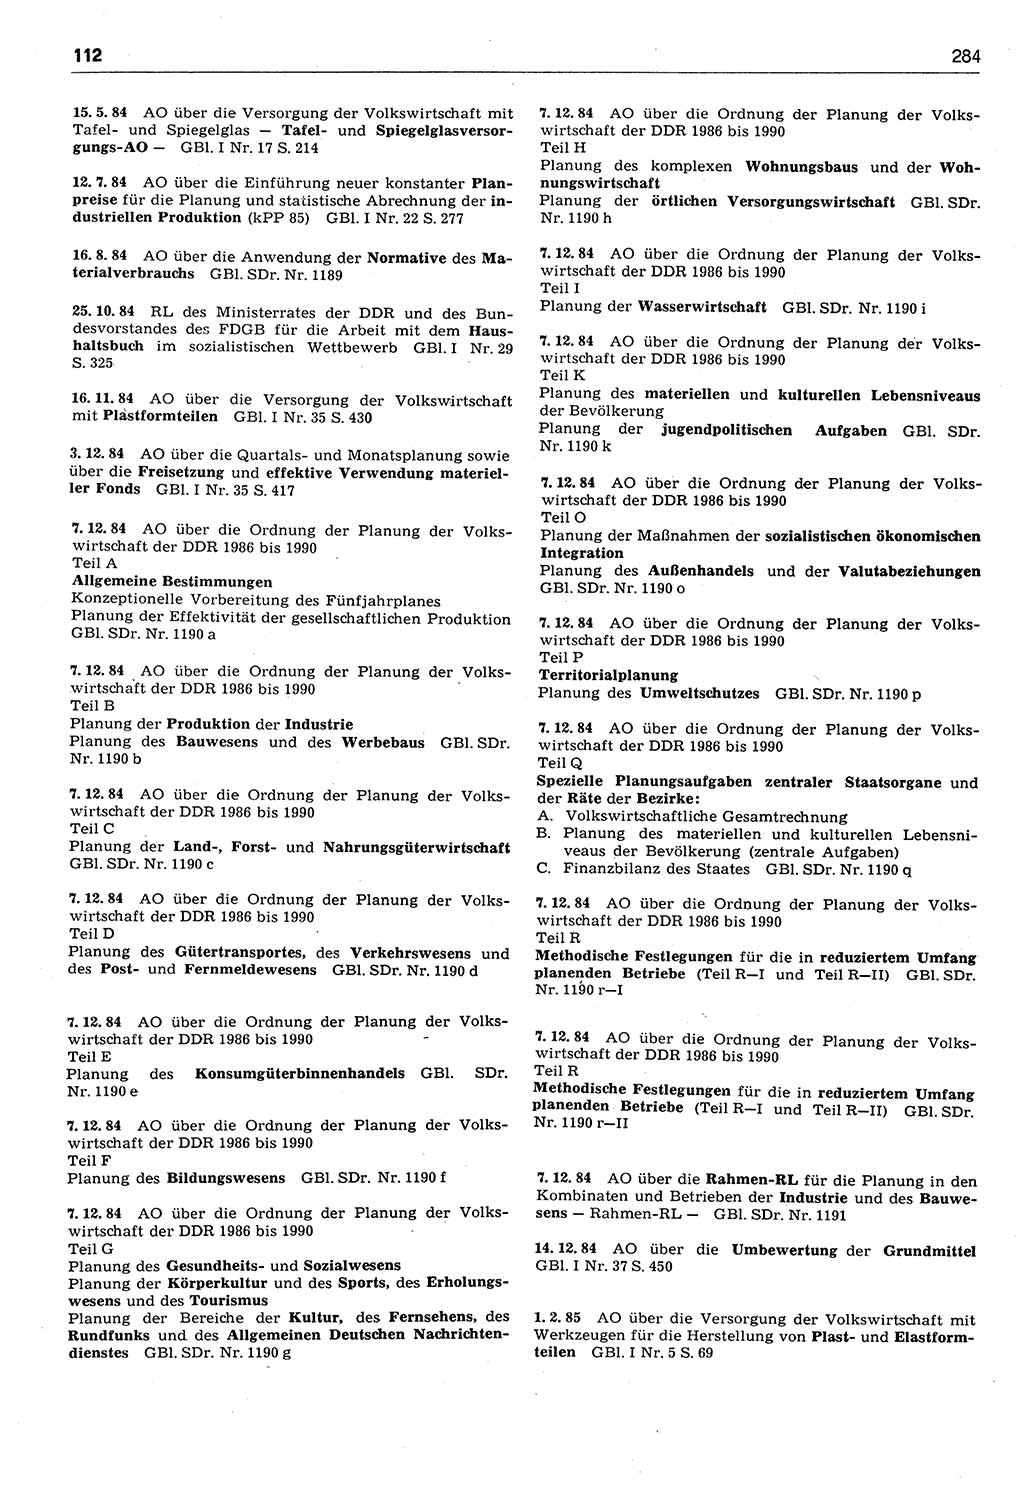 Das geltende Recht der Deutschen Demokratischen Republik (DDR) 1949-1988, Seite 284 (Gelt. R. DDR 1949-1988, S. 284)